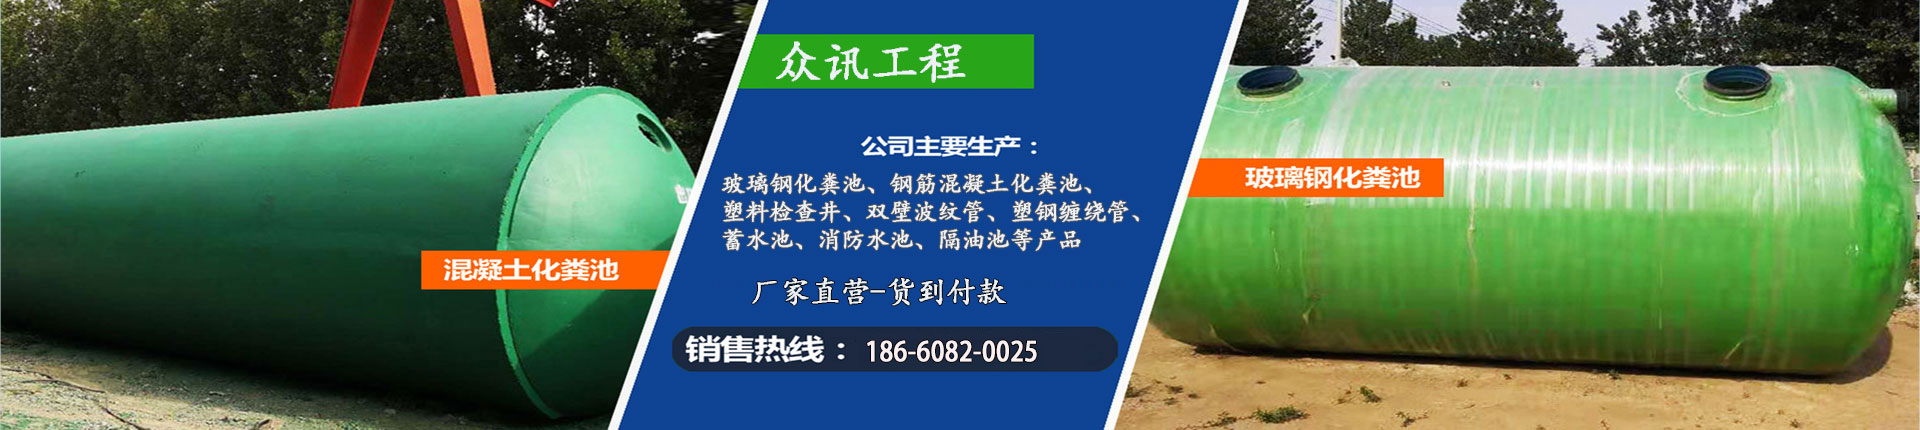 防护虹吸排水收集系统、荆州本地防护虹吸排水收集系统、荆州、荆州防护虹吸排水收集系统